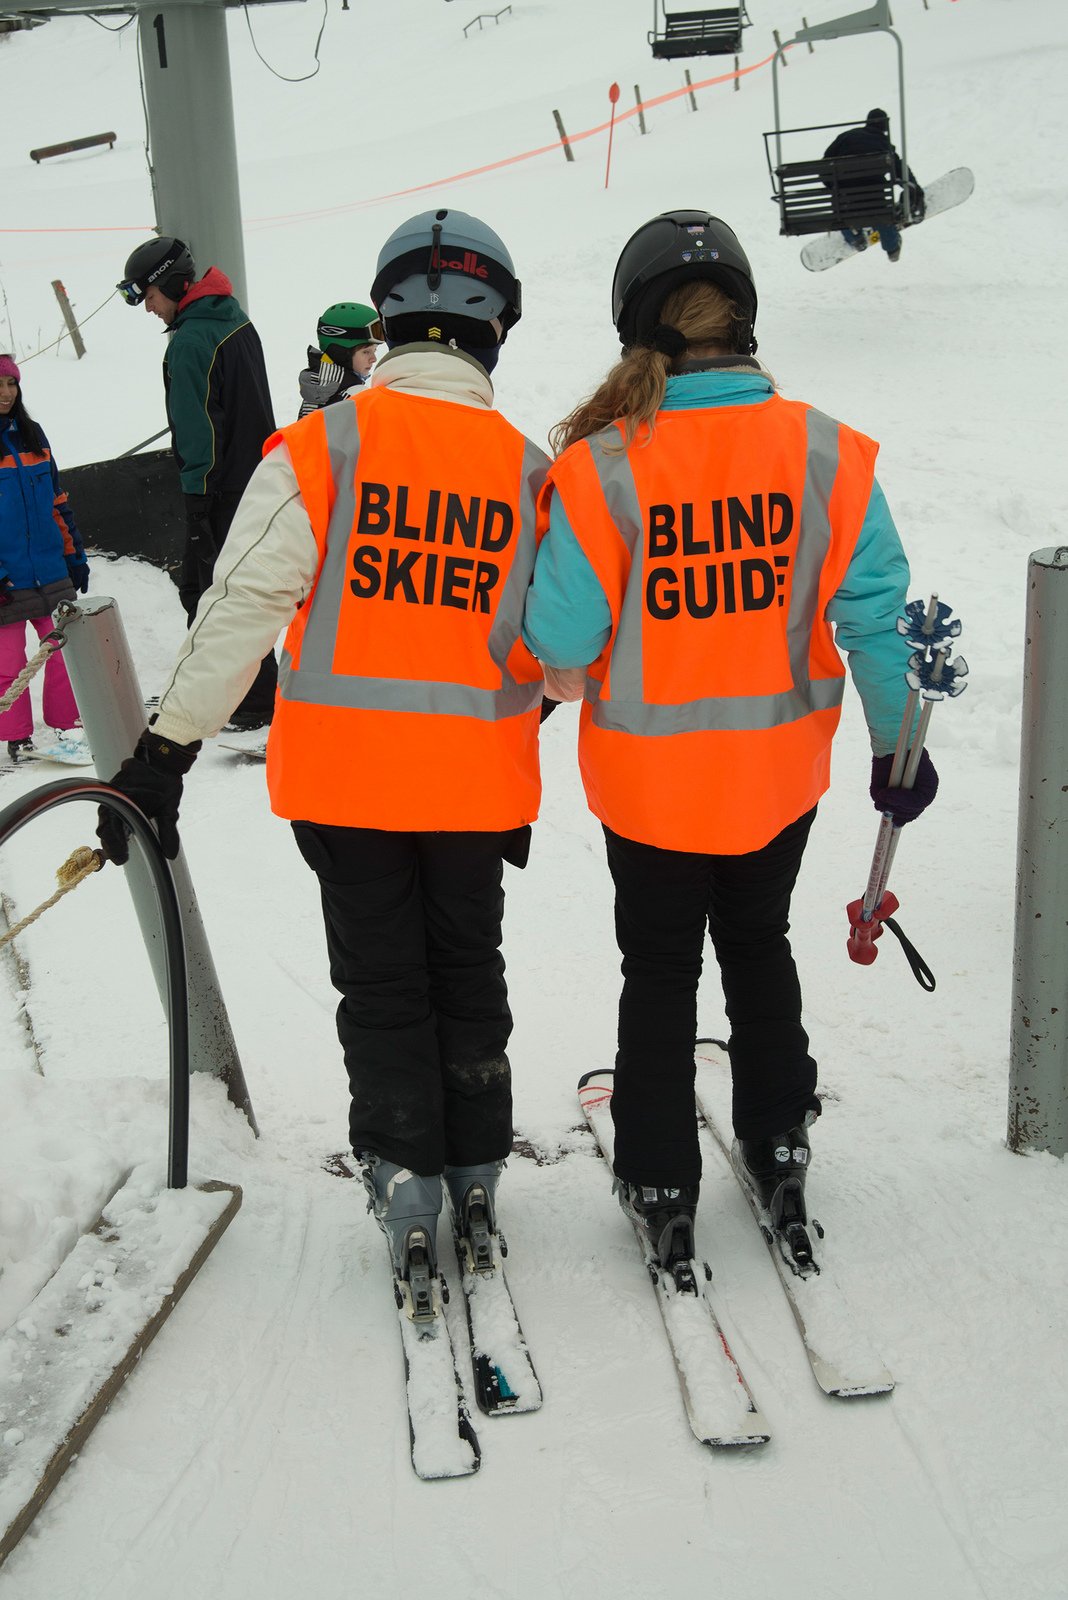 Blind guide helping blind skier onto ski lift